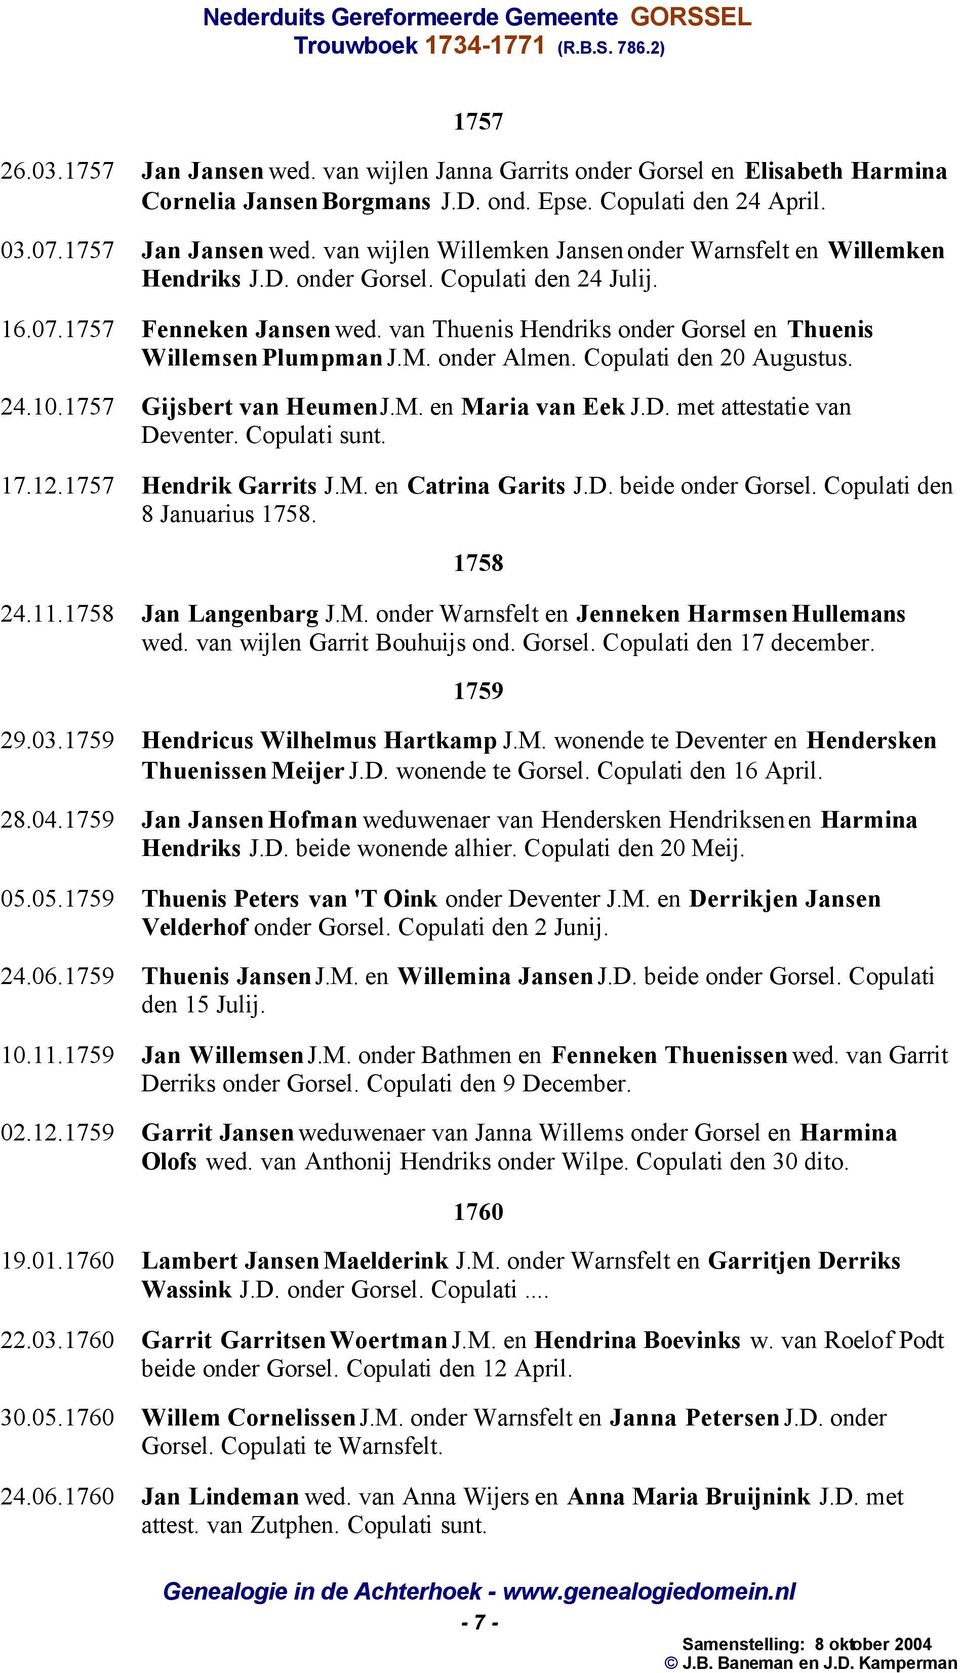 1757 Gijsbert van Heumen J.M. en Maria van Eek J.D. met attestatie van Deventer. Copulati sunt. 17.12.1757 Hendrik Garrits J.M. en Catrina Garits J.D. beide onder Gorsel.